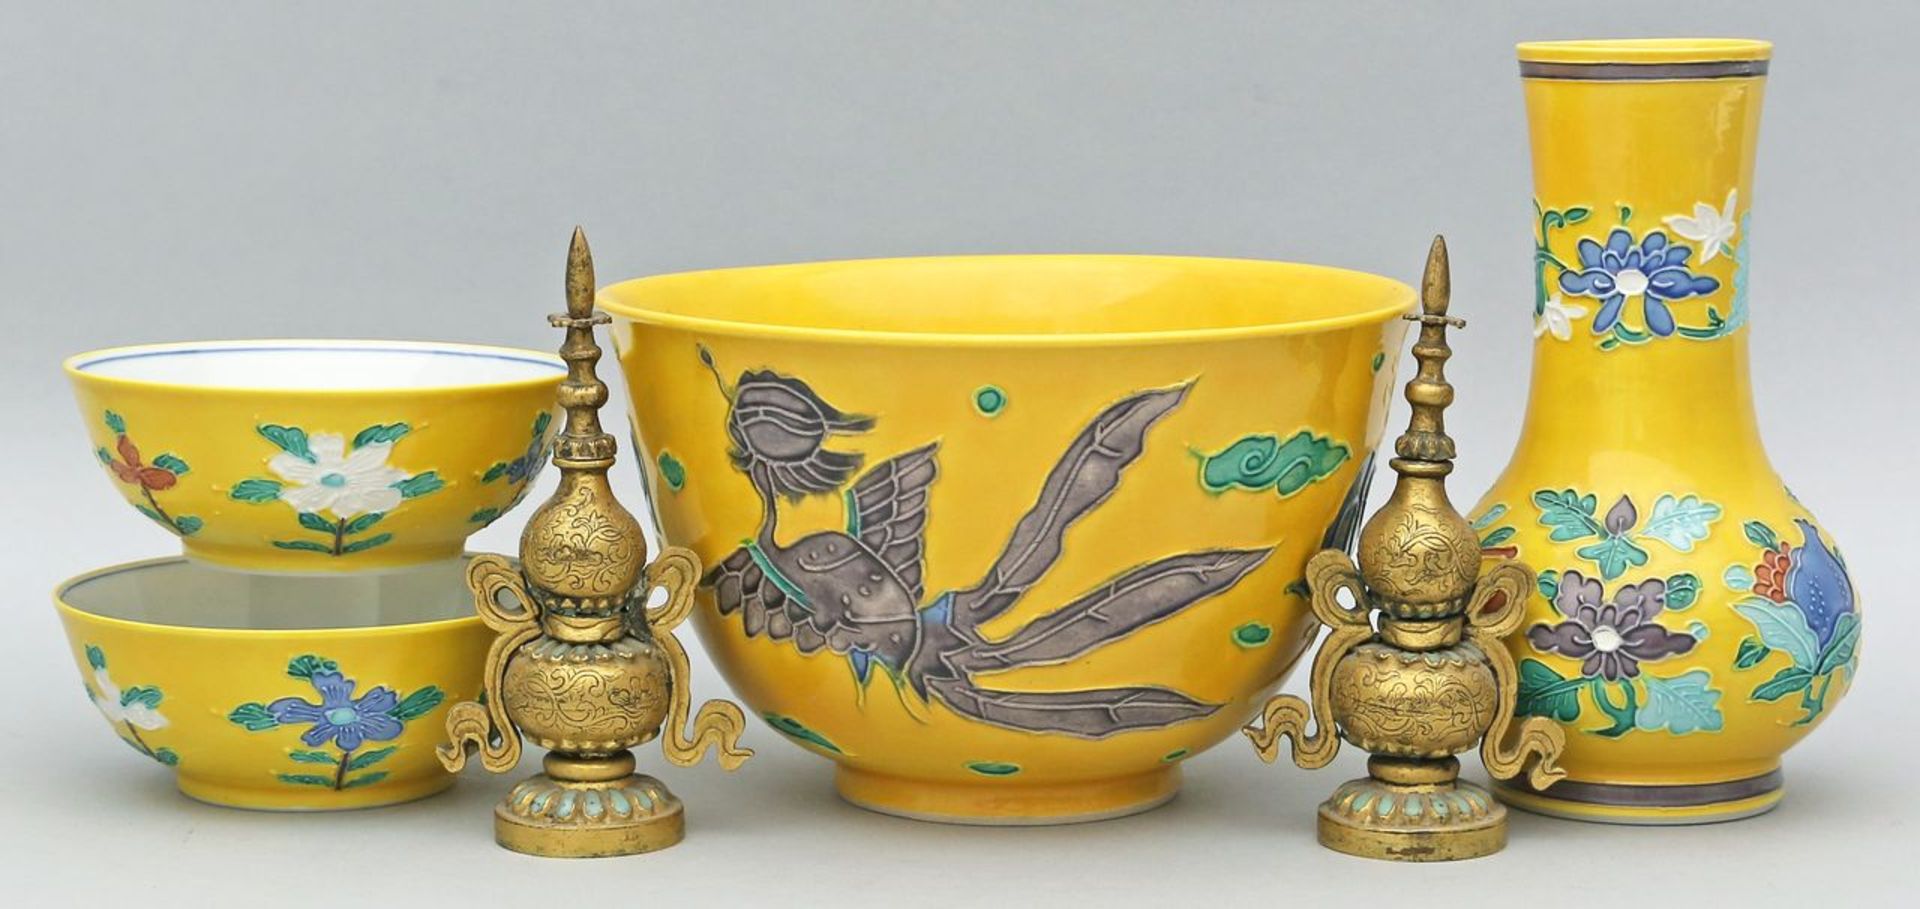 Schale, Vase und zwei Schälchen im asiatischen Stil. Porzellan. Gelb glasierter Grund, buntes